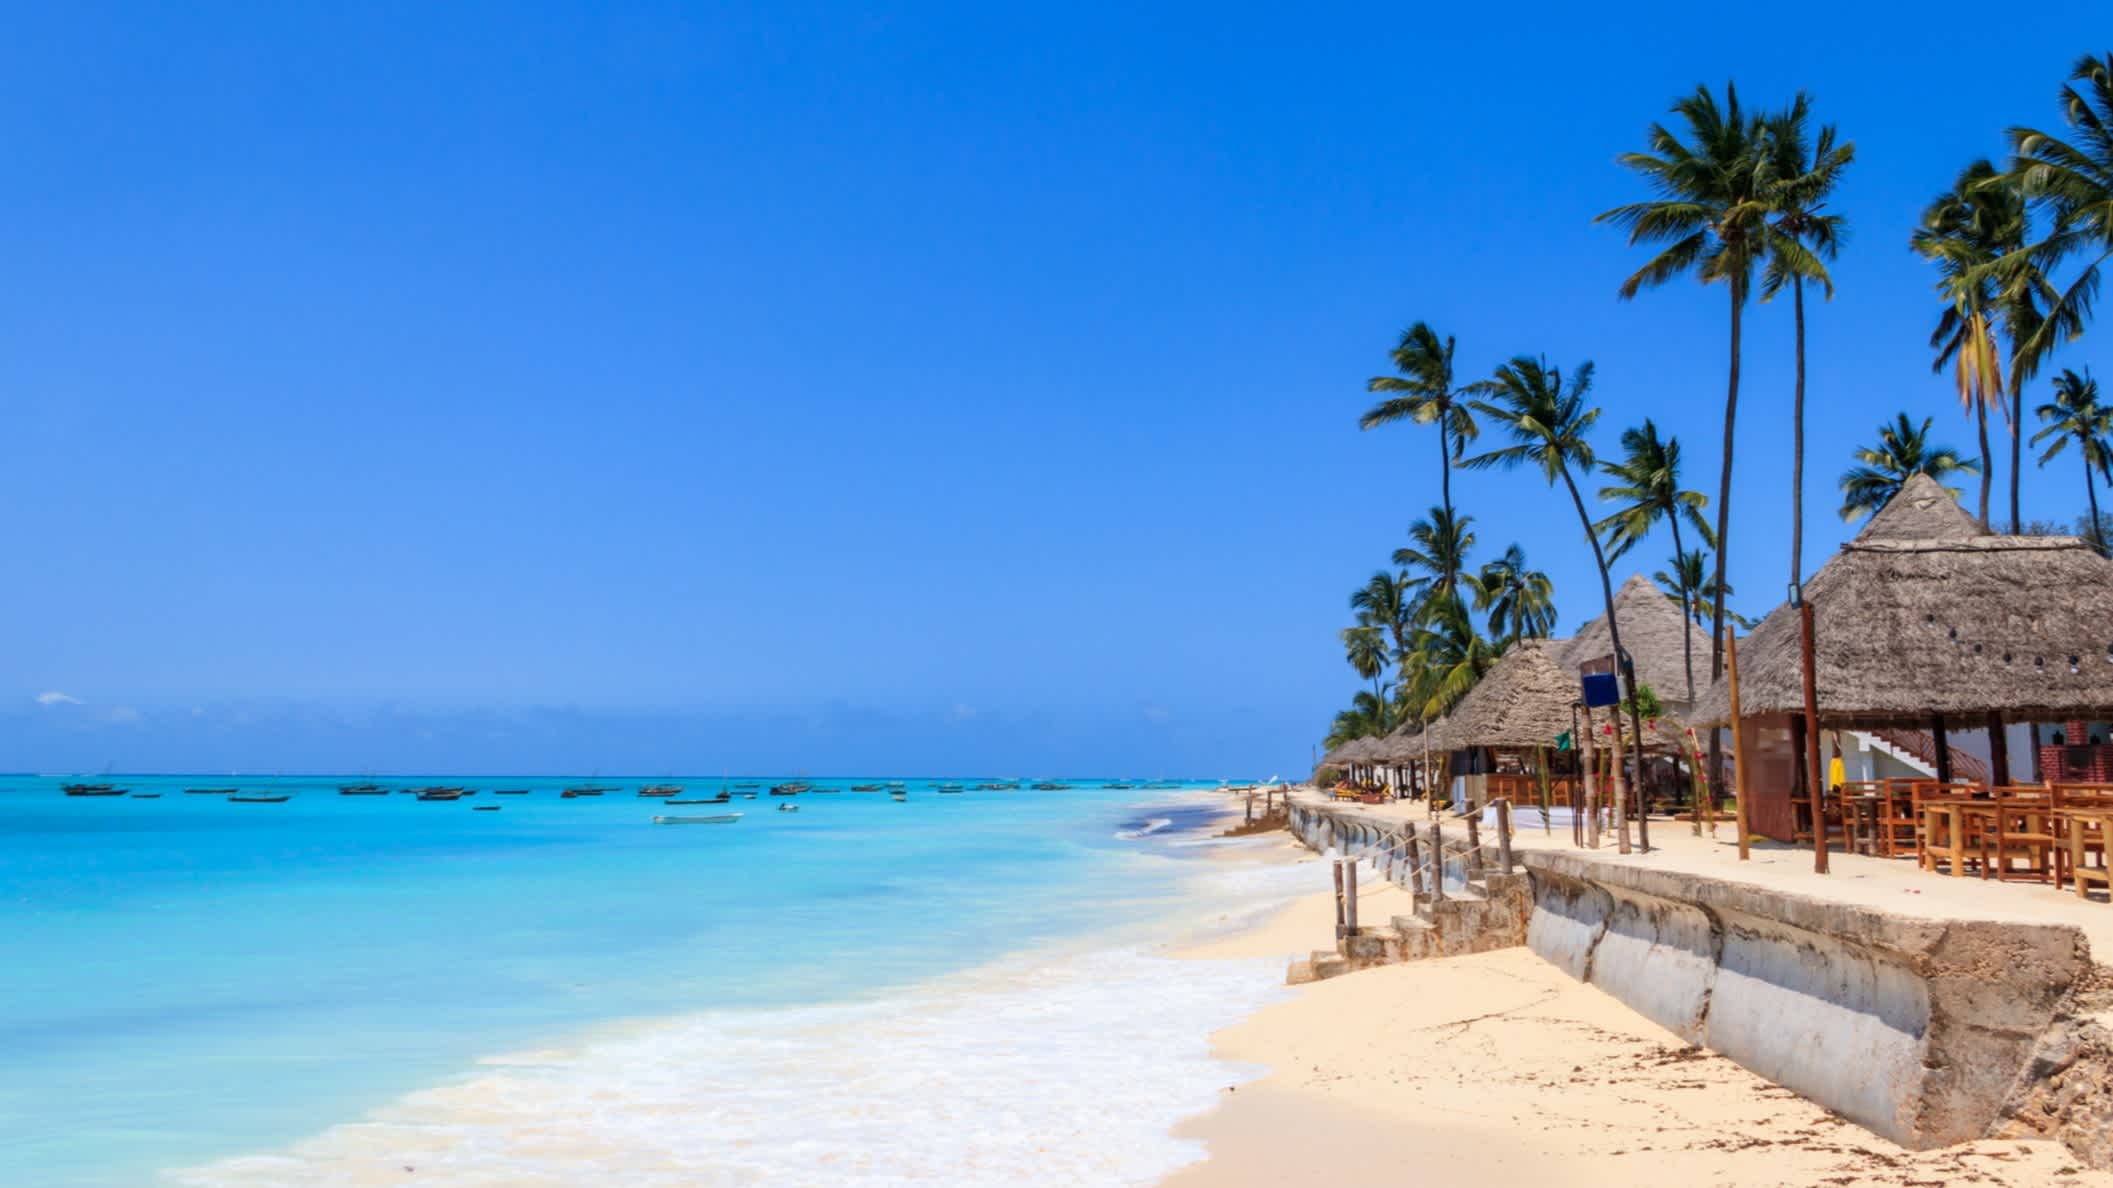 Sandstrand Nunwi Beach in Sansibar mit Pavillons, imposanten Palmen und türkisblauem Meer.